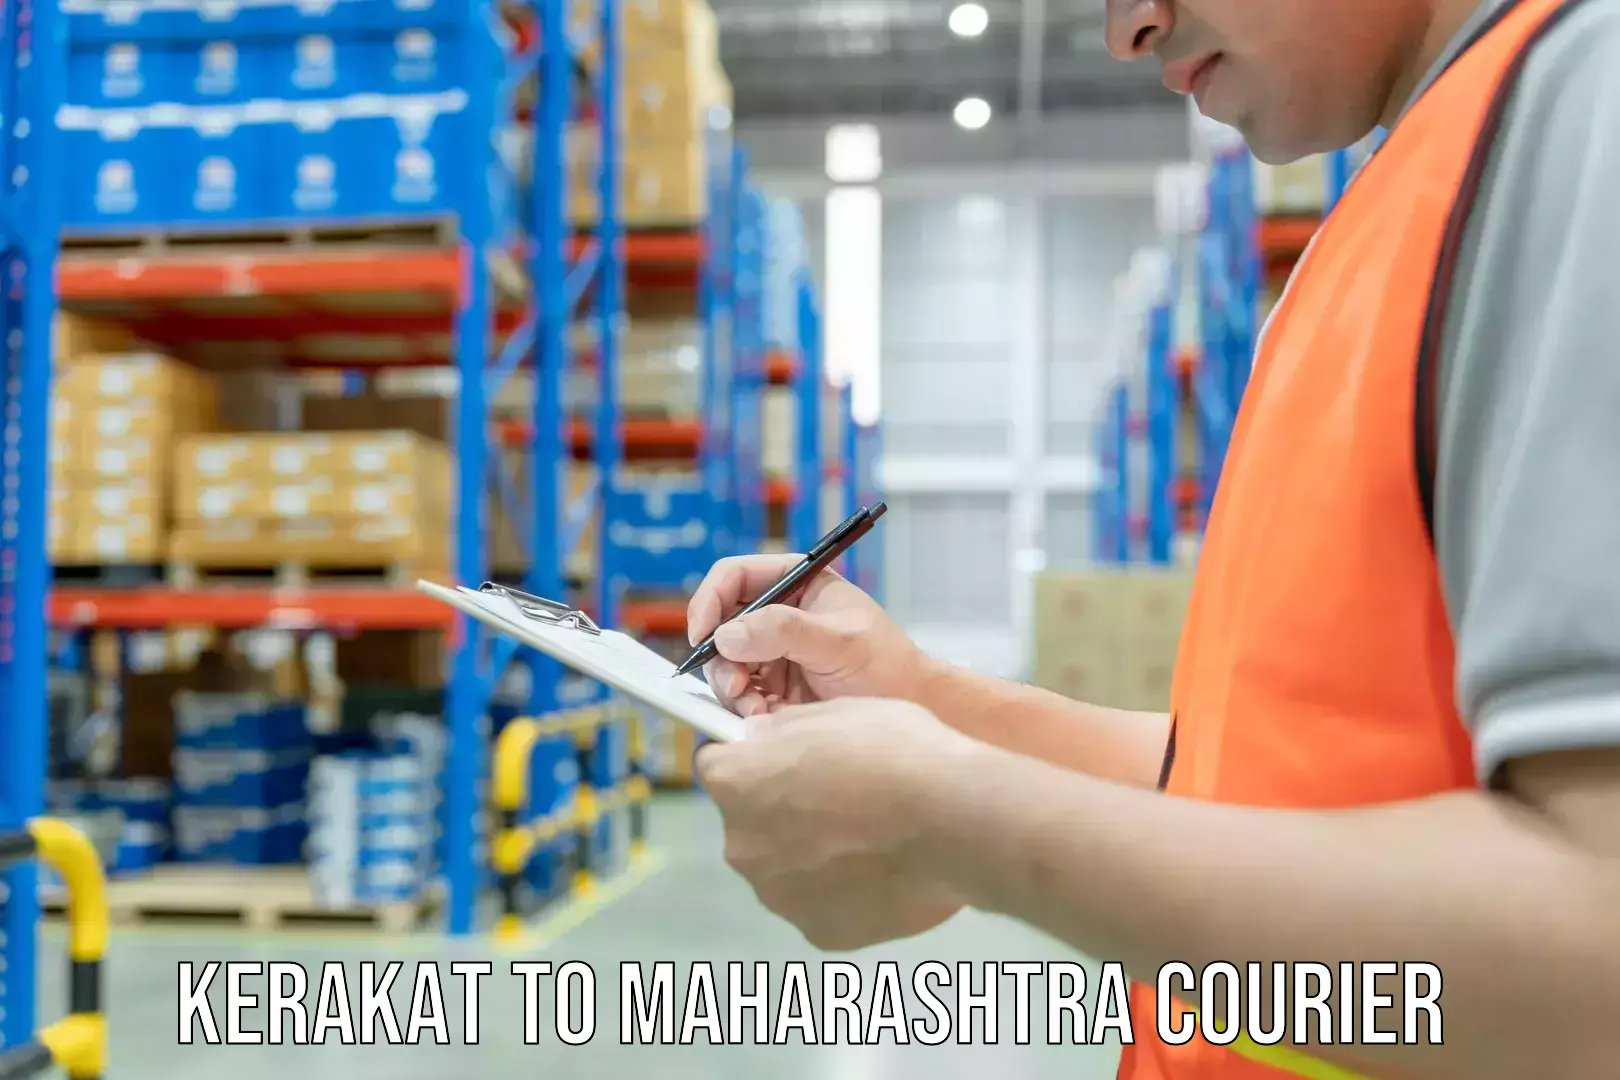 Furniture transport service Kerakat to Maharashtra